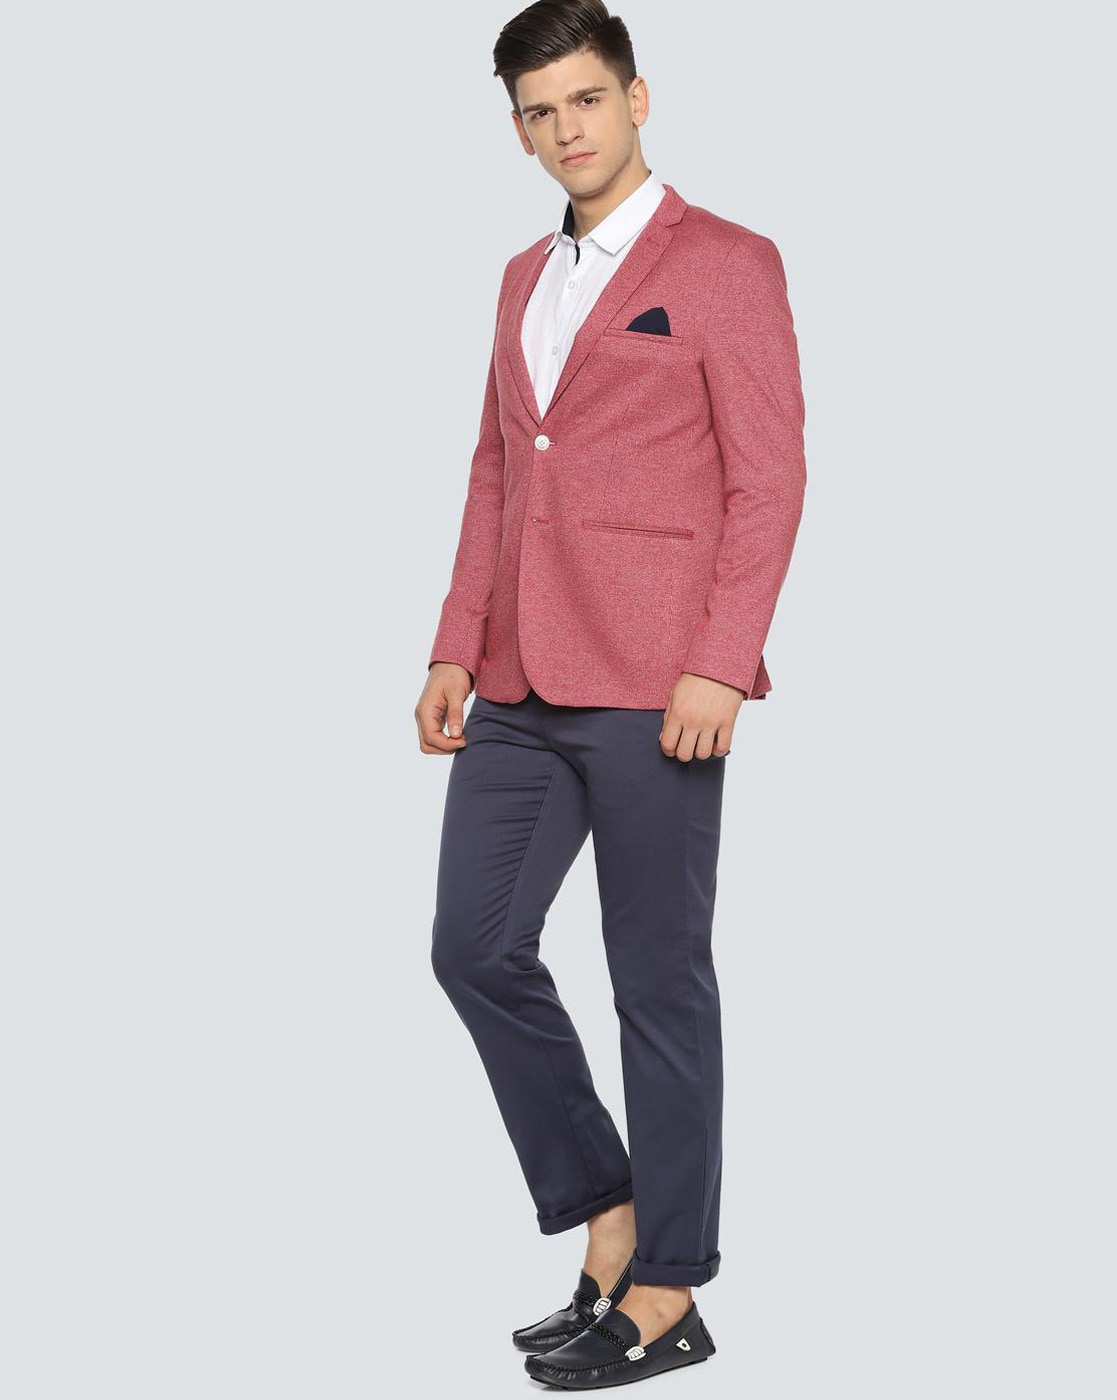 Buy Beige Suit for Men, 3 Piece Suit for Groom and Groomsmen, Formal Wear  for Prom, Dinner, Party Wear, Dinner, Office Wear, Bespoke Wear. Online in  India - Etsy